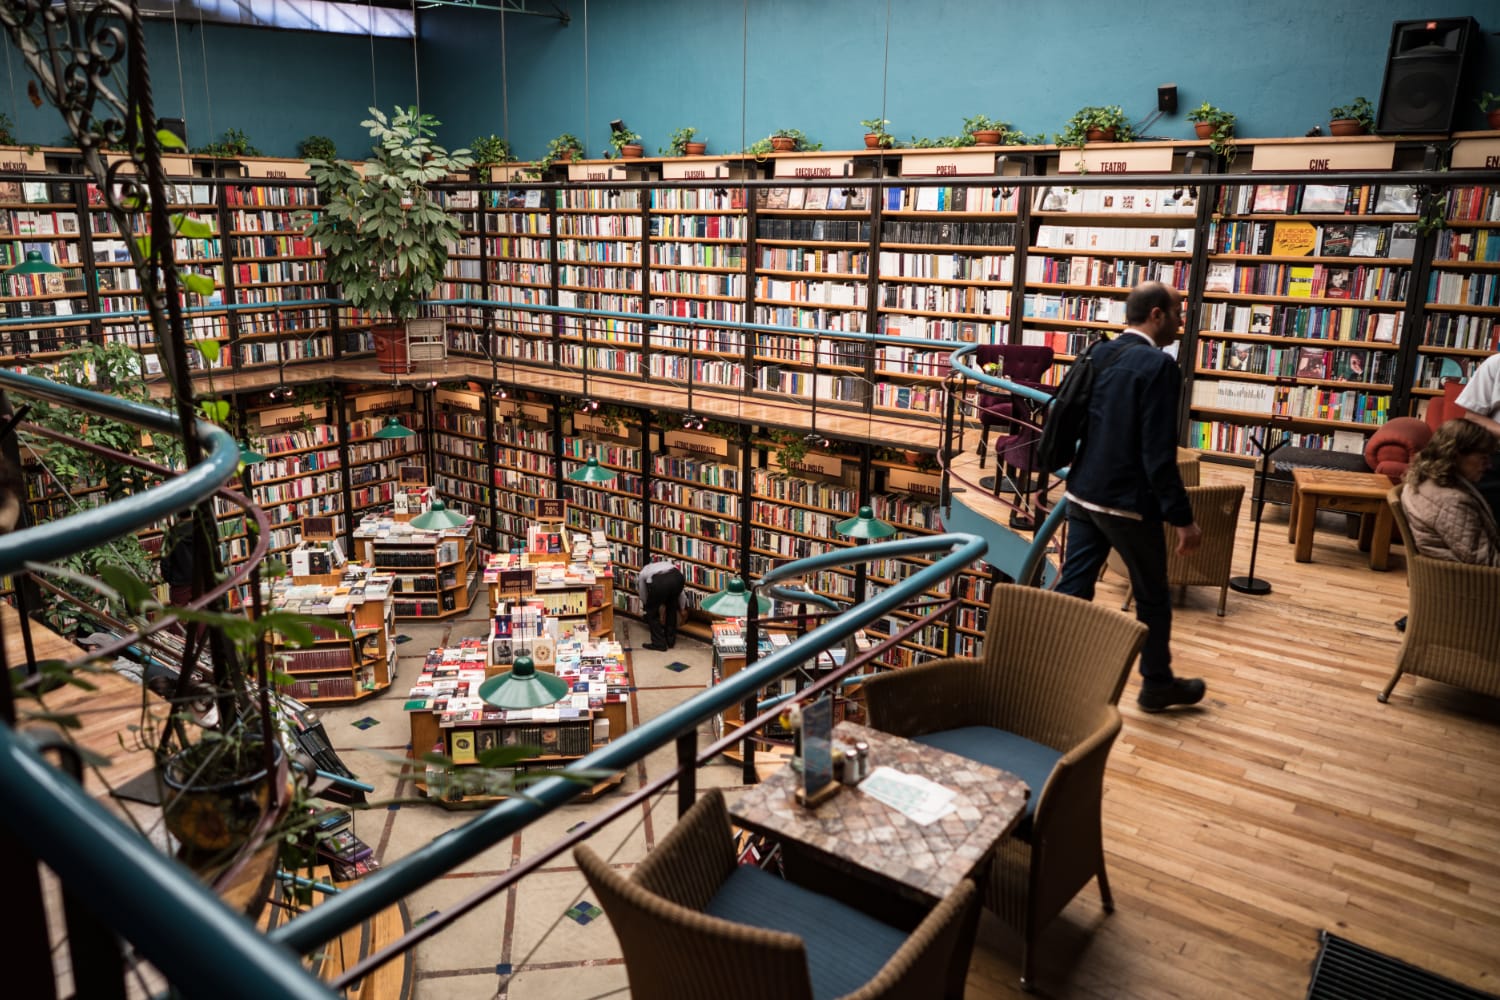 El Pendulo Bookstore in Mexico City, Mexico